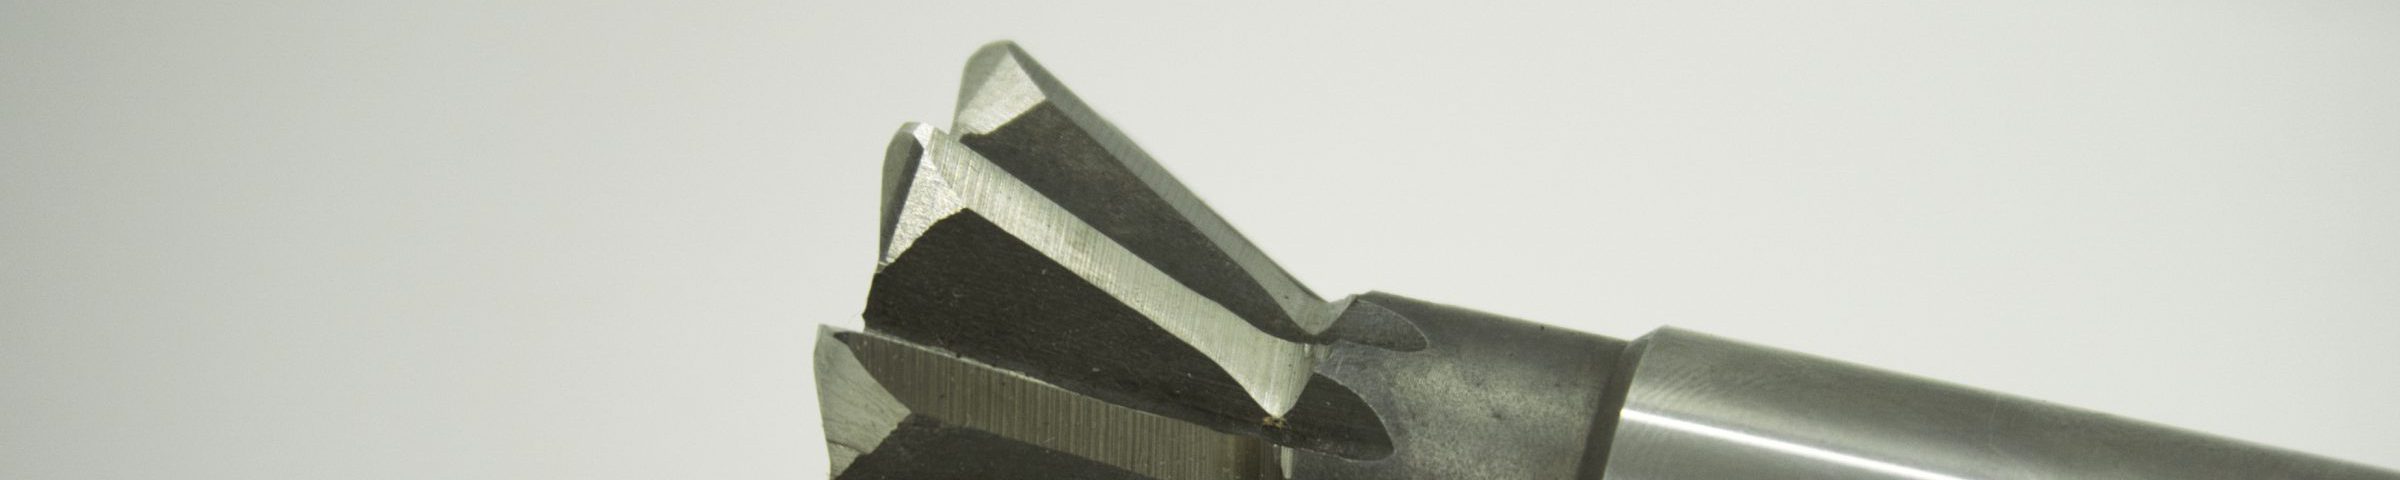 アンギュラーカッターの再研磨 - 切削工具の再研磨・製作・レンタルはツールリメイク